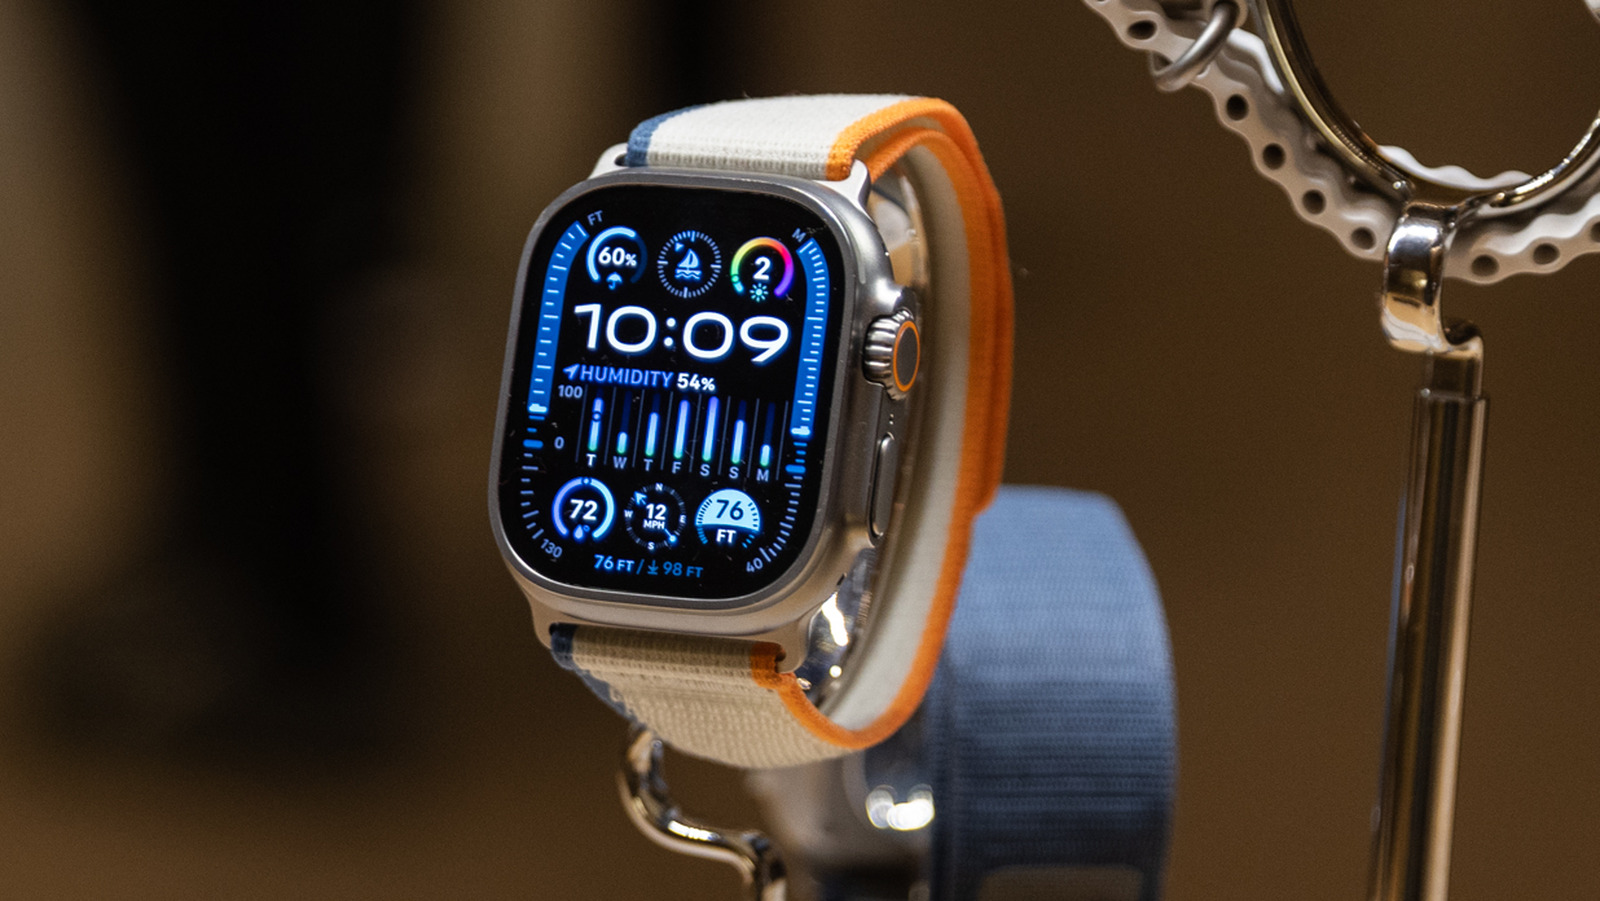 Apple eliminará la función de oxígeno en sangre del Apple Watch debido a la prohibición de ventas en EE. UU.